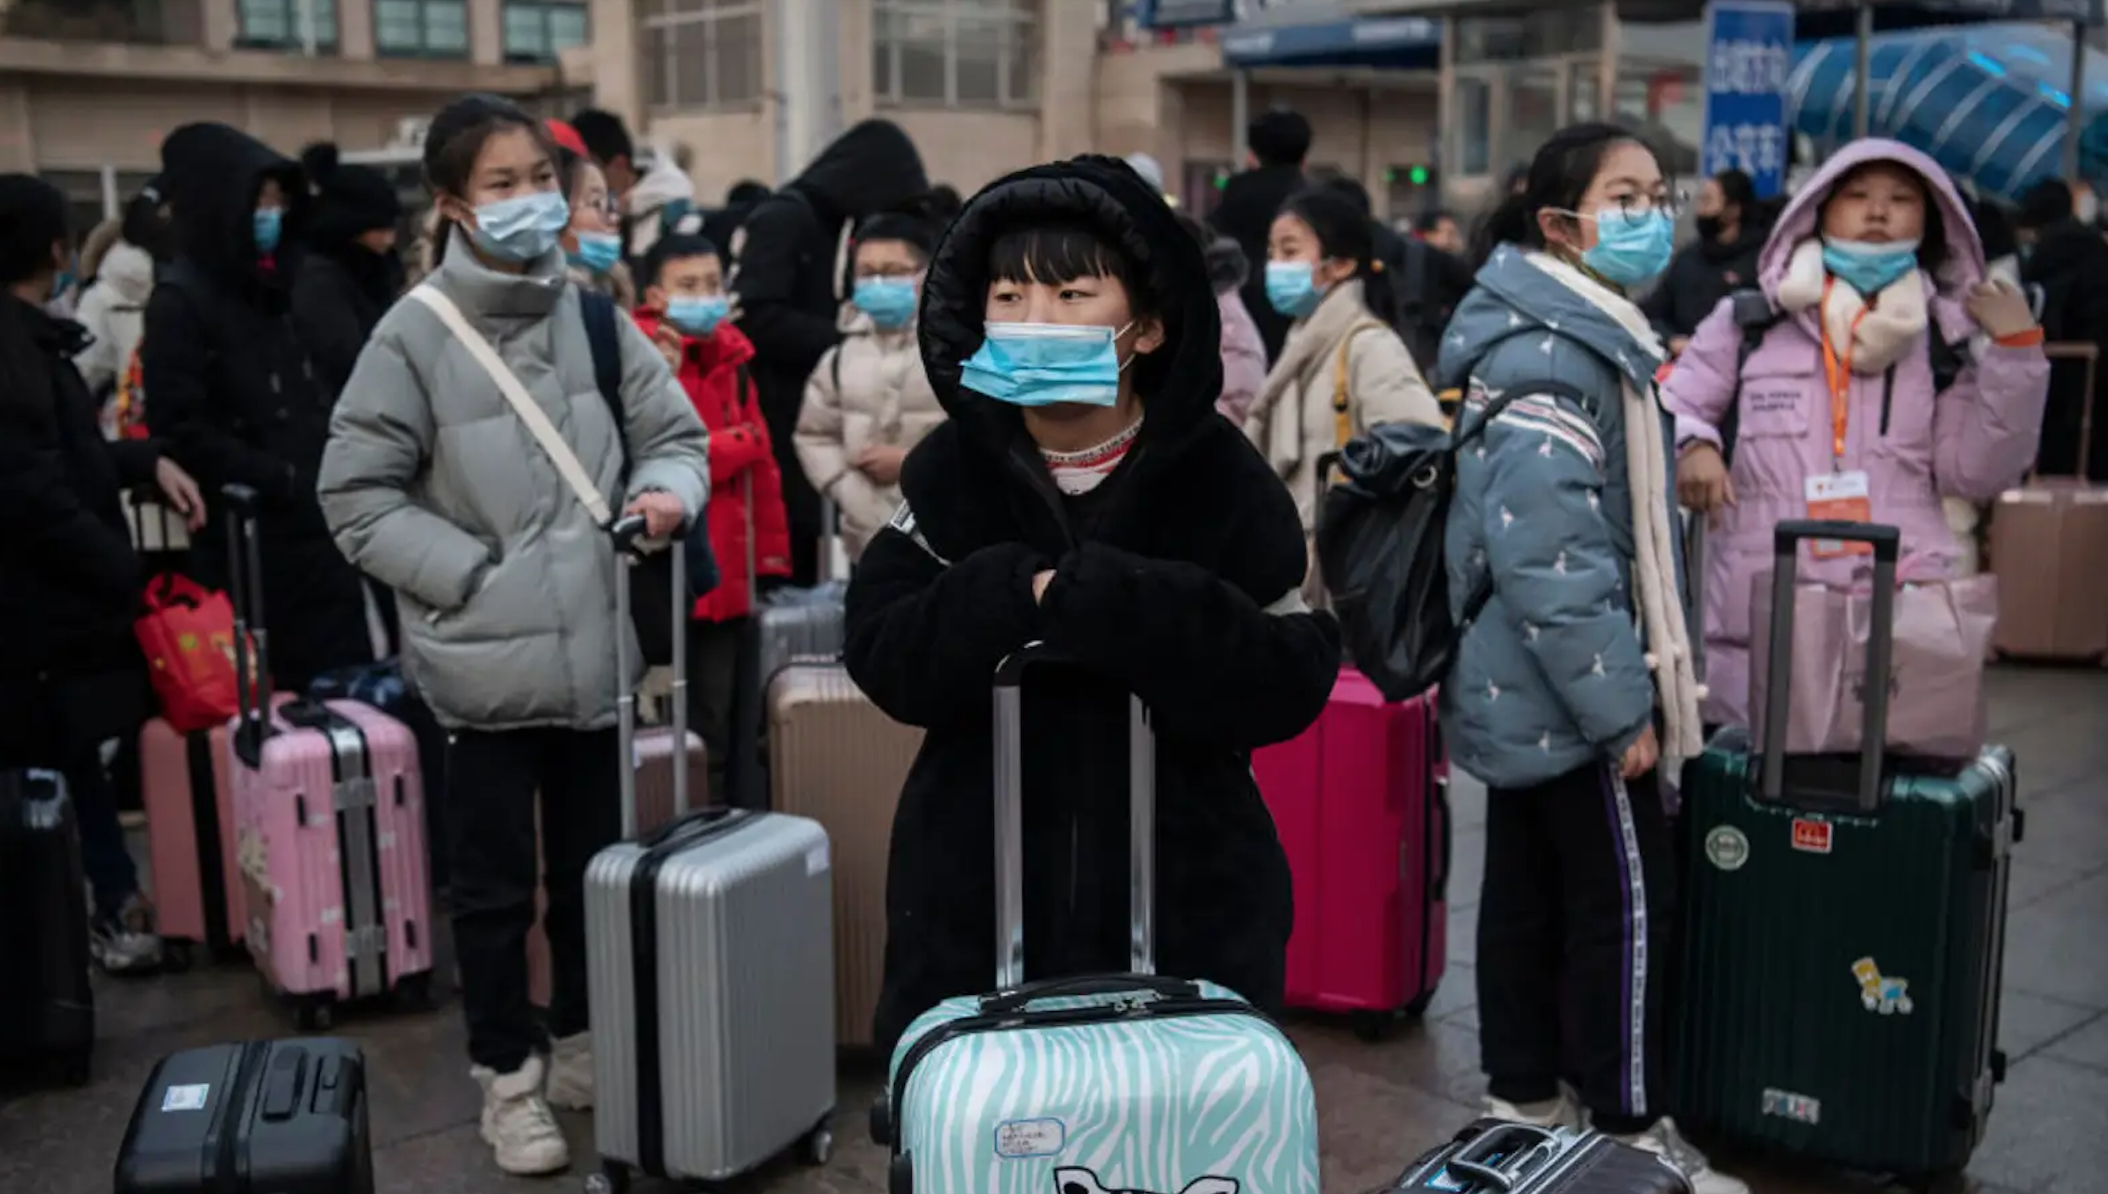 Aumento de infecciones respiratorias en niños preocupa a la OMS y genera respuestas de China